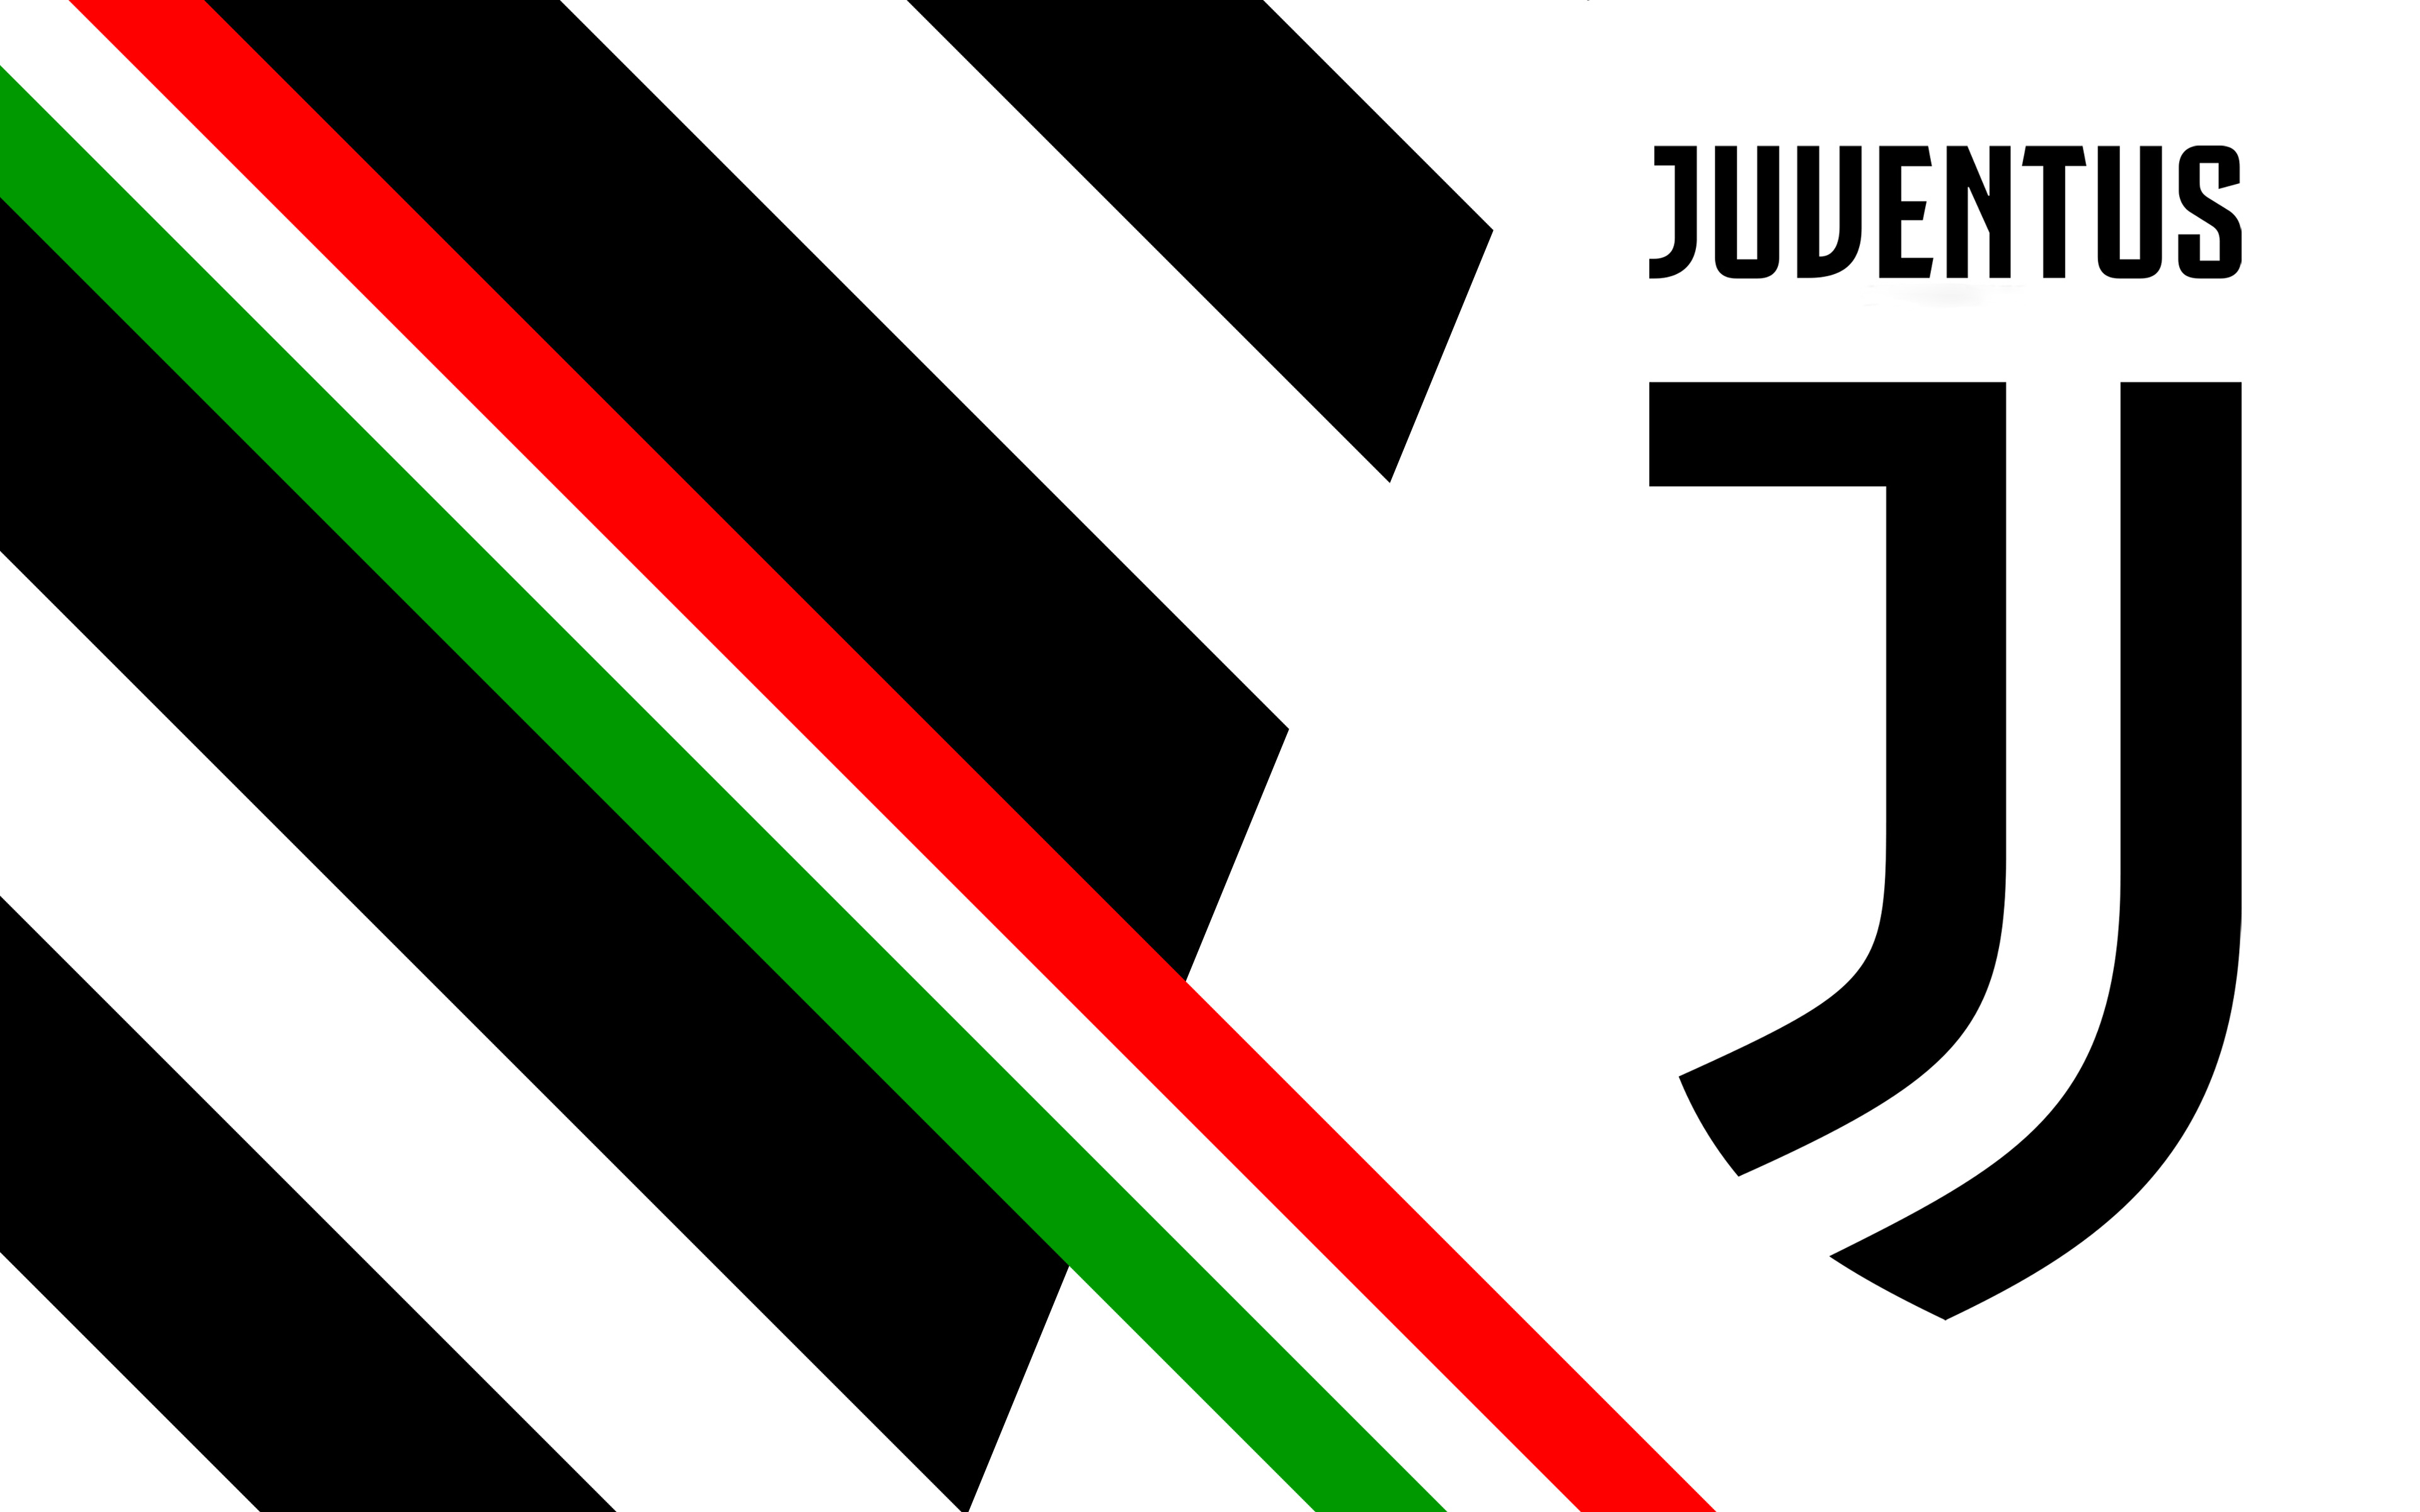  Juventus  Logo 4k  Ultra HD  Wallpaper  Background Image 